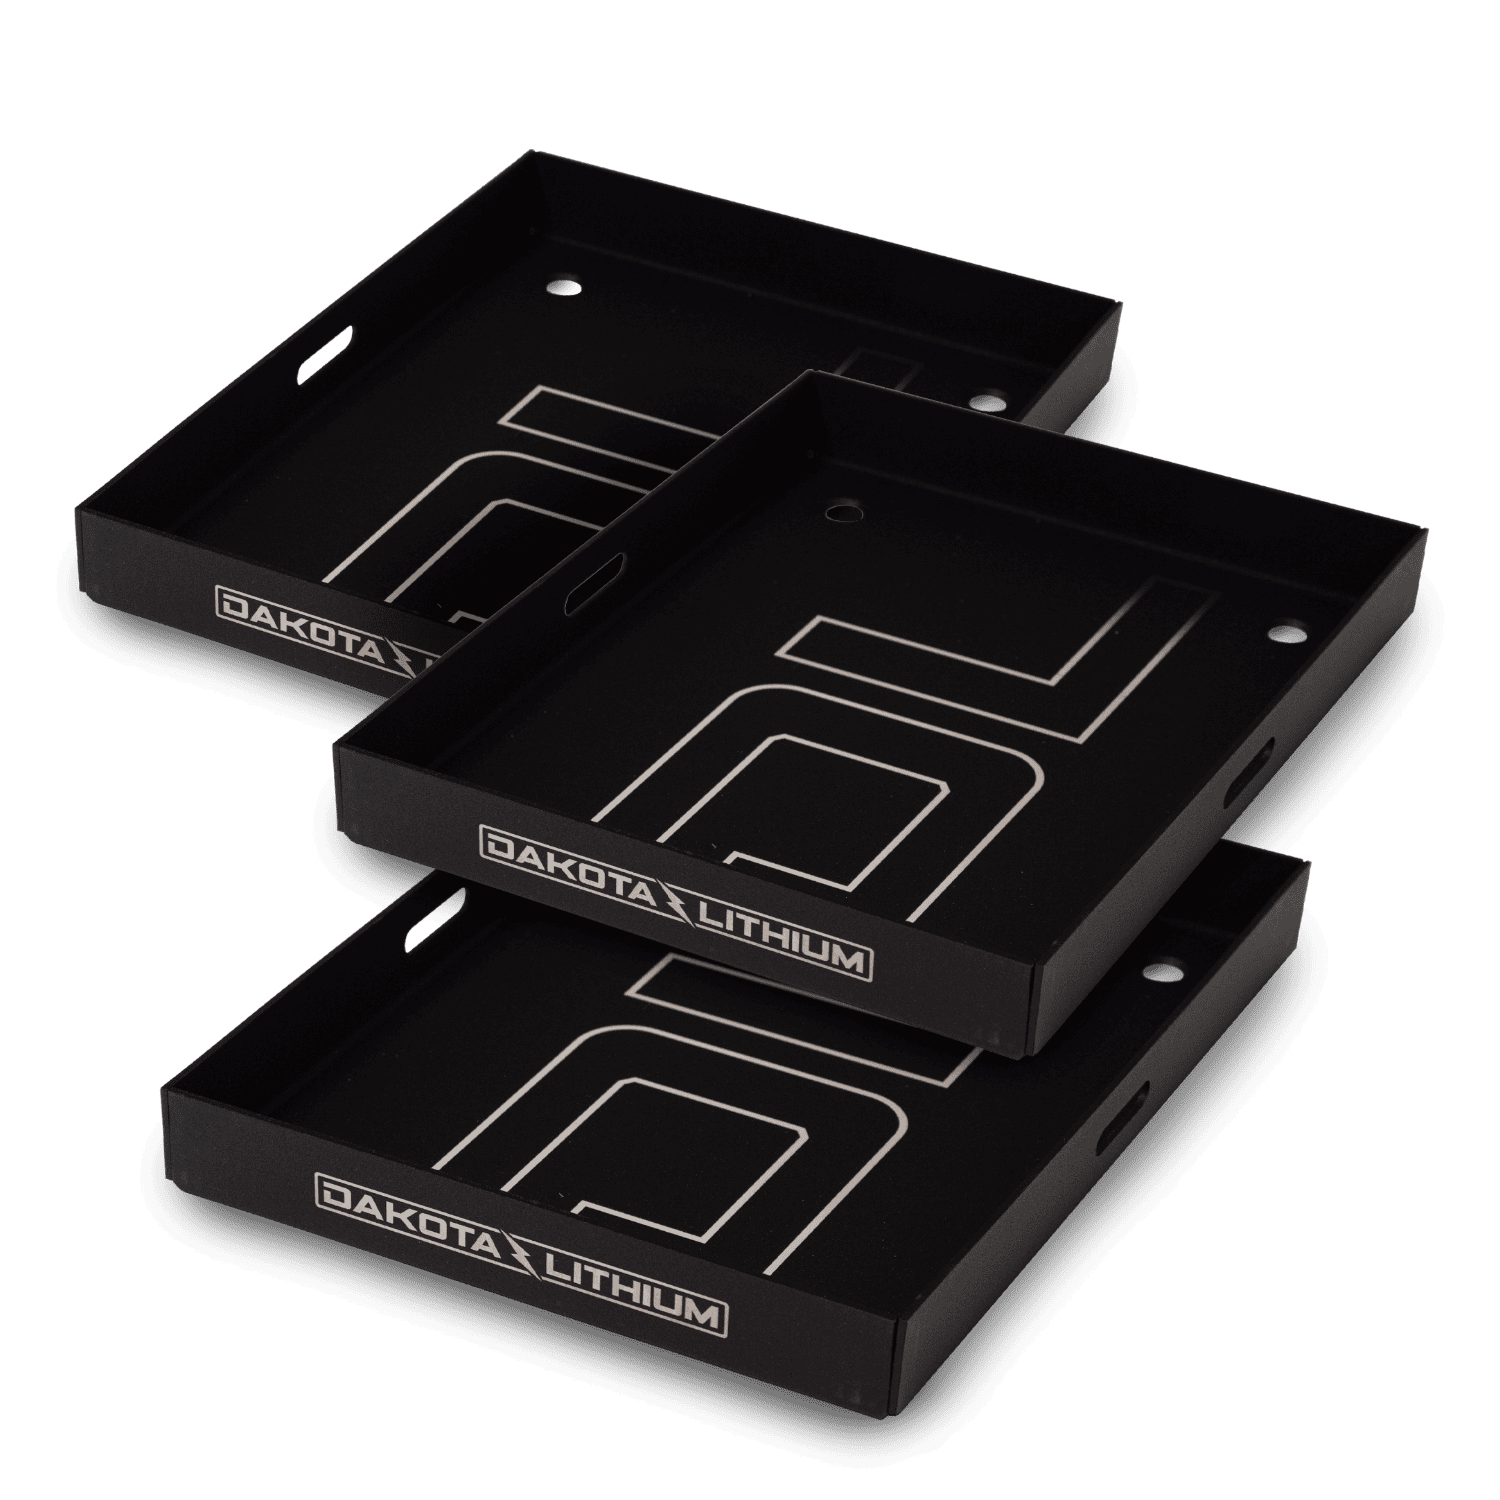 3-Pack of Marine Battery Trays for Dakota Lithium Batteries